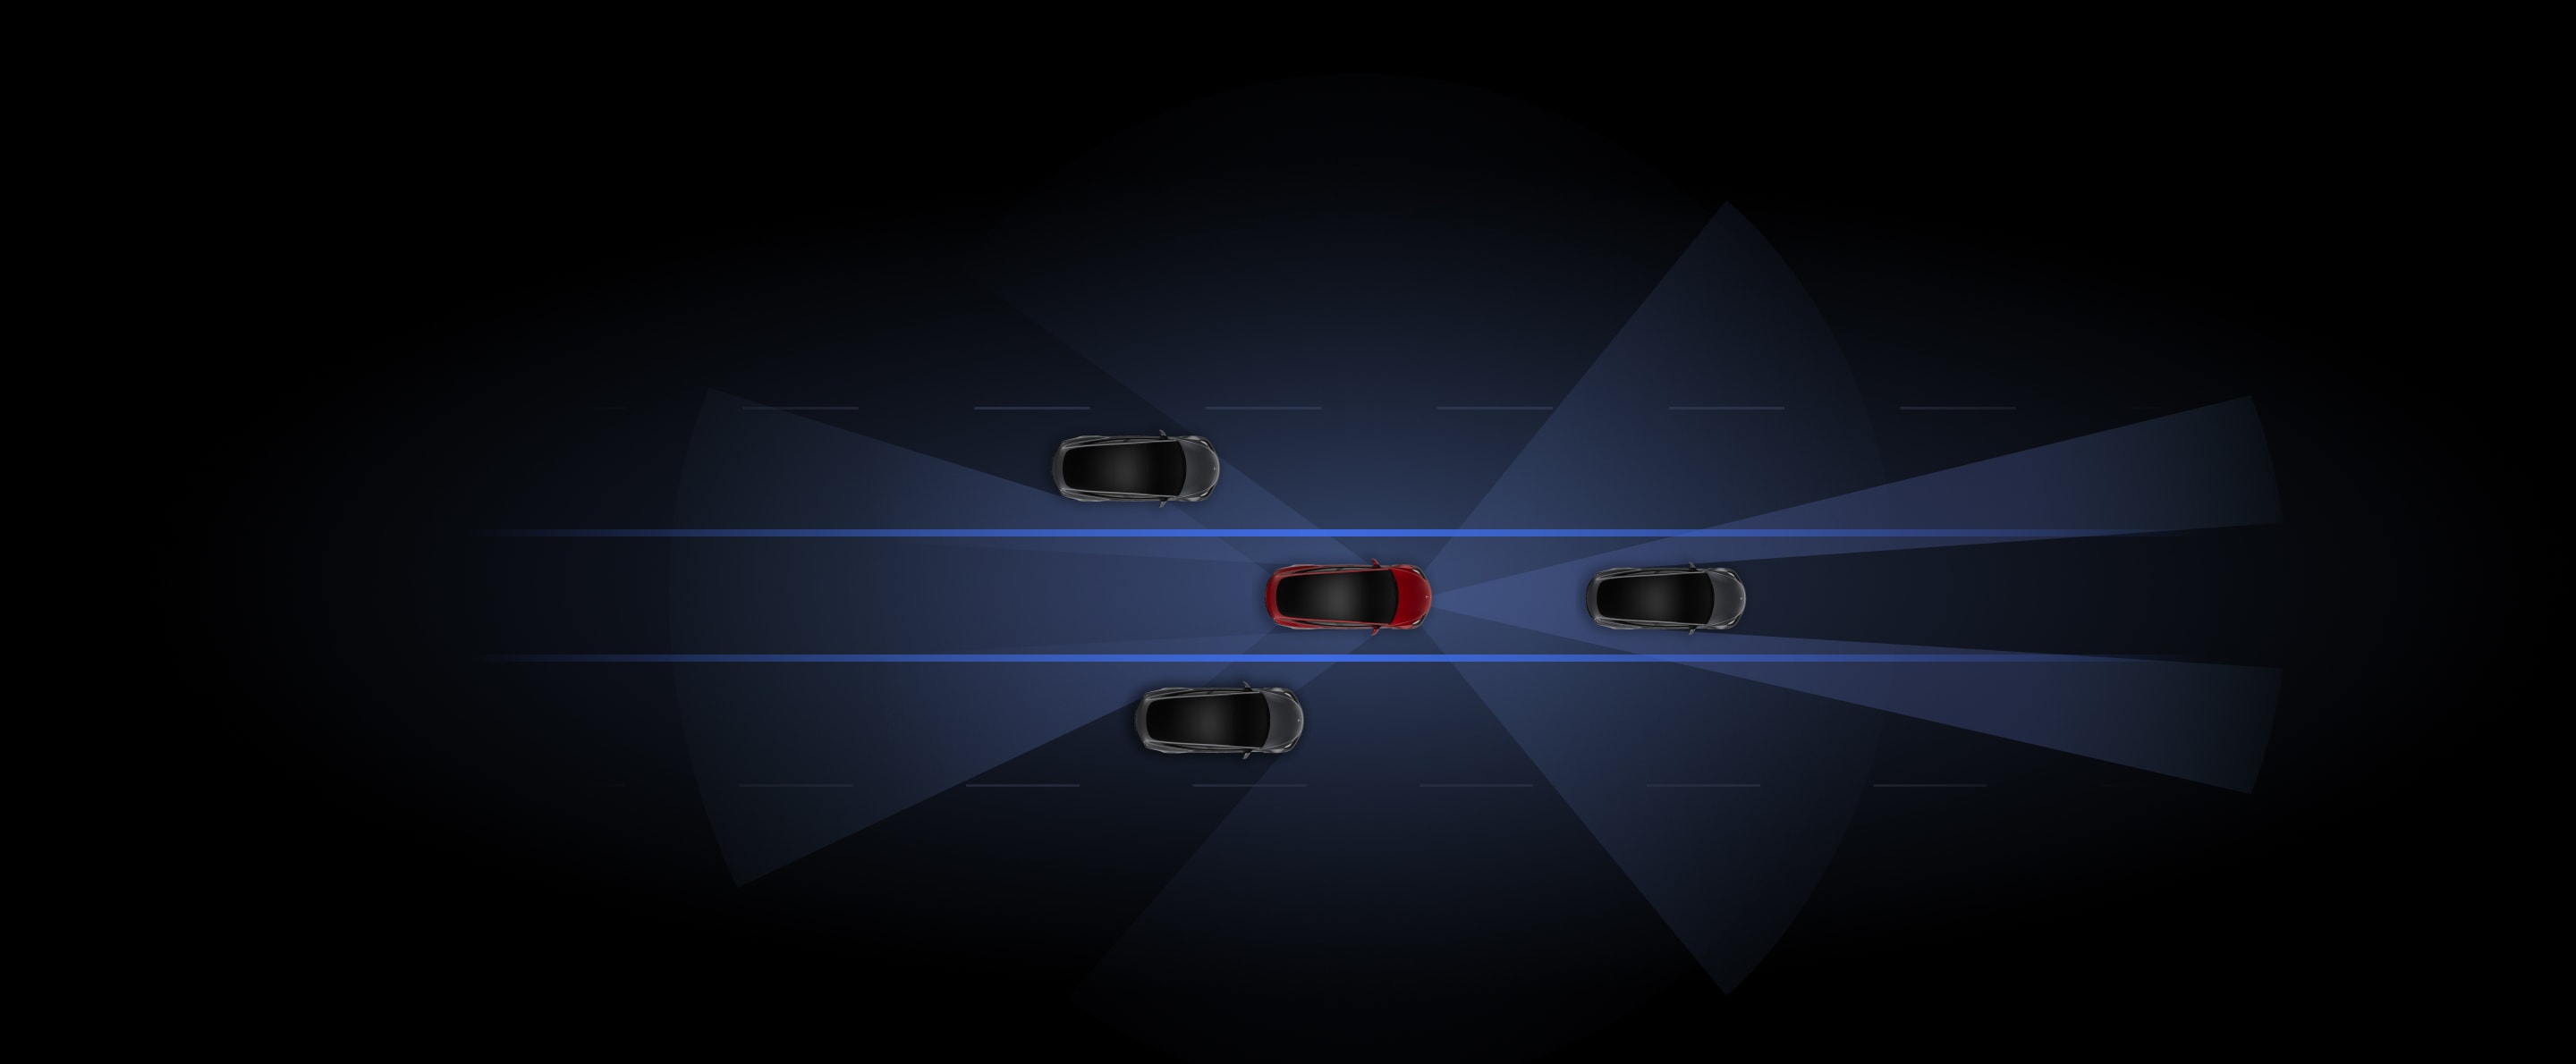 Autopilot a Tesla Visionnel